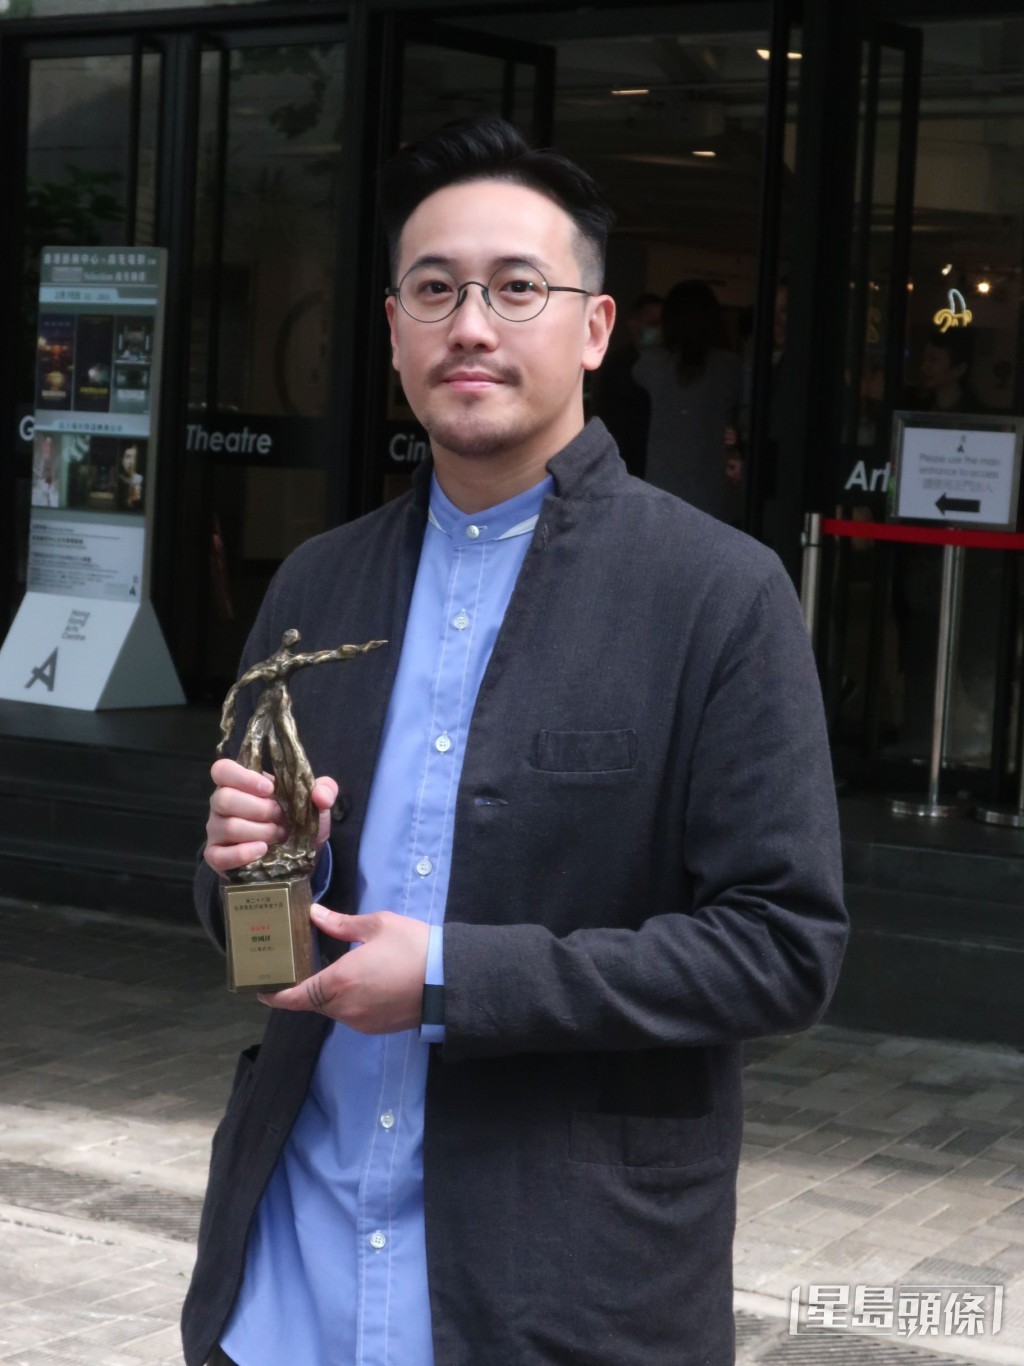 曾国祥于2020年凭执导《少年的你》，荣获第26届香港电影评论学会大奖及第39届香港电影金像奖“最佳导演”。